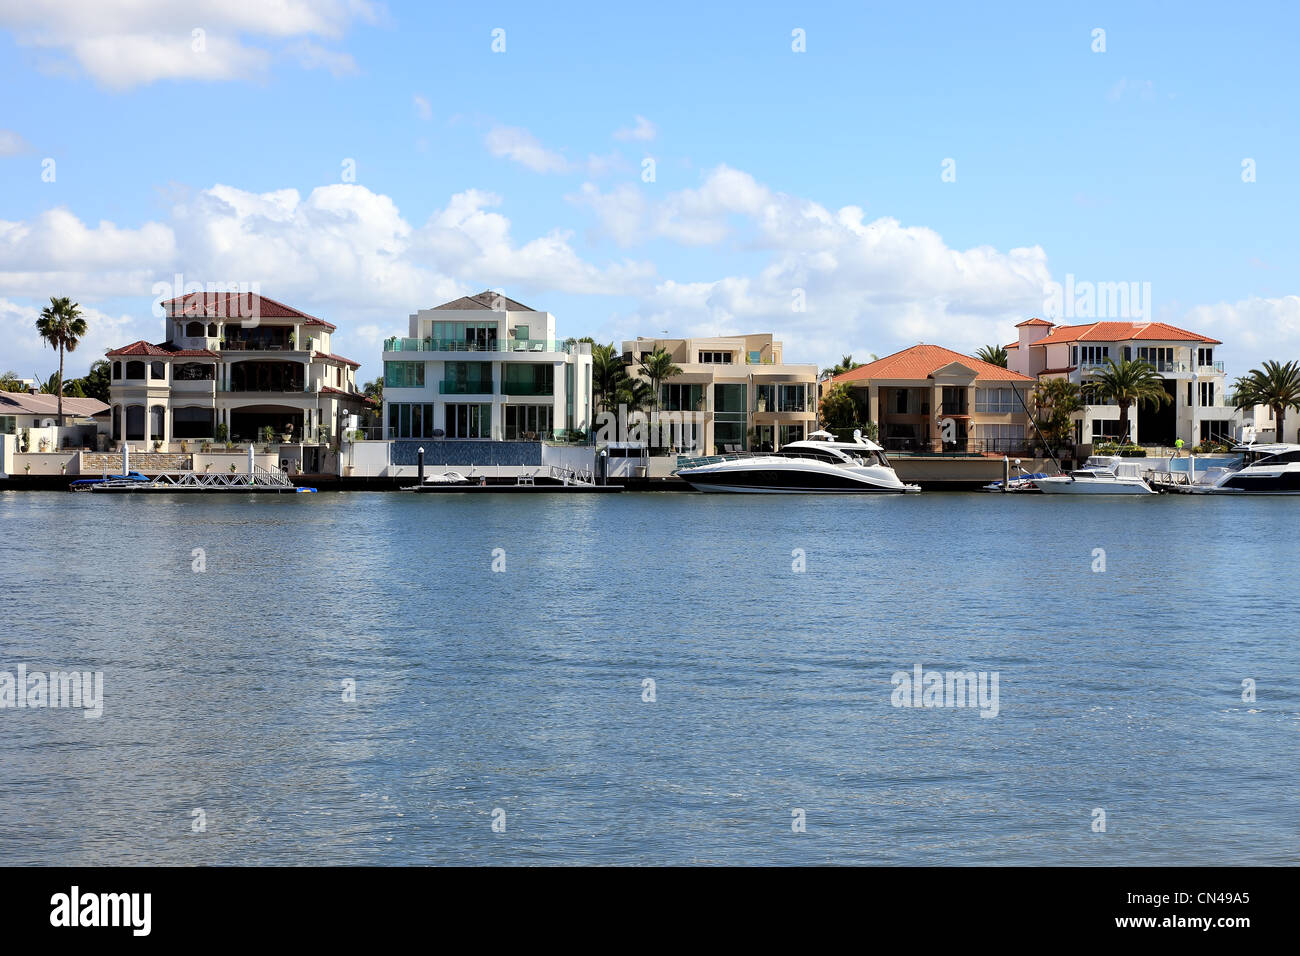 Waterfront urbano vivienda viviendas individuales y múltiples para uso residencial Foto de stock